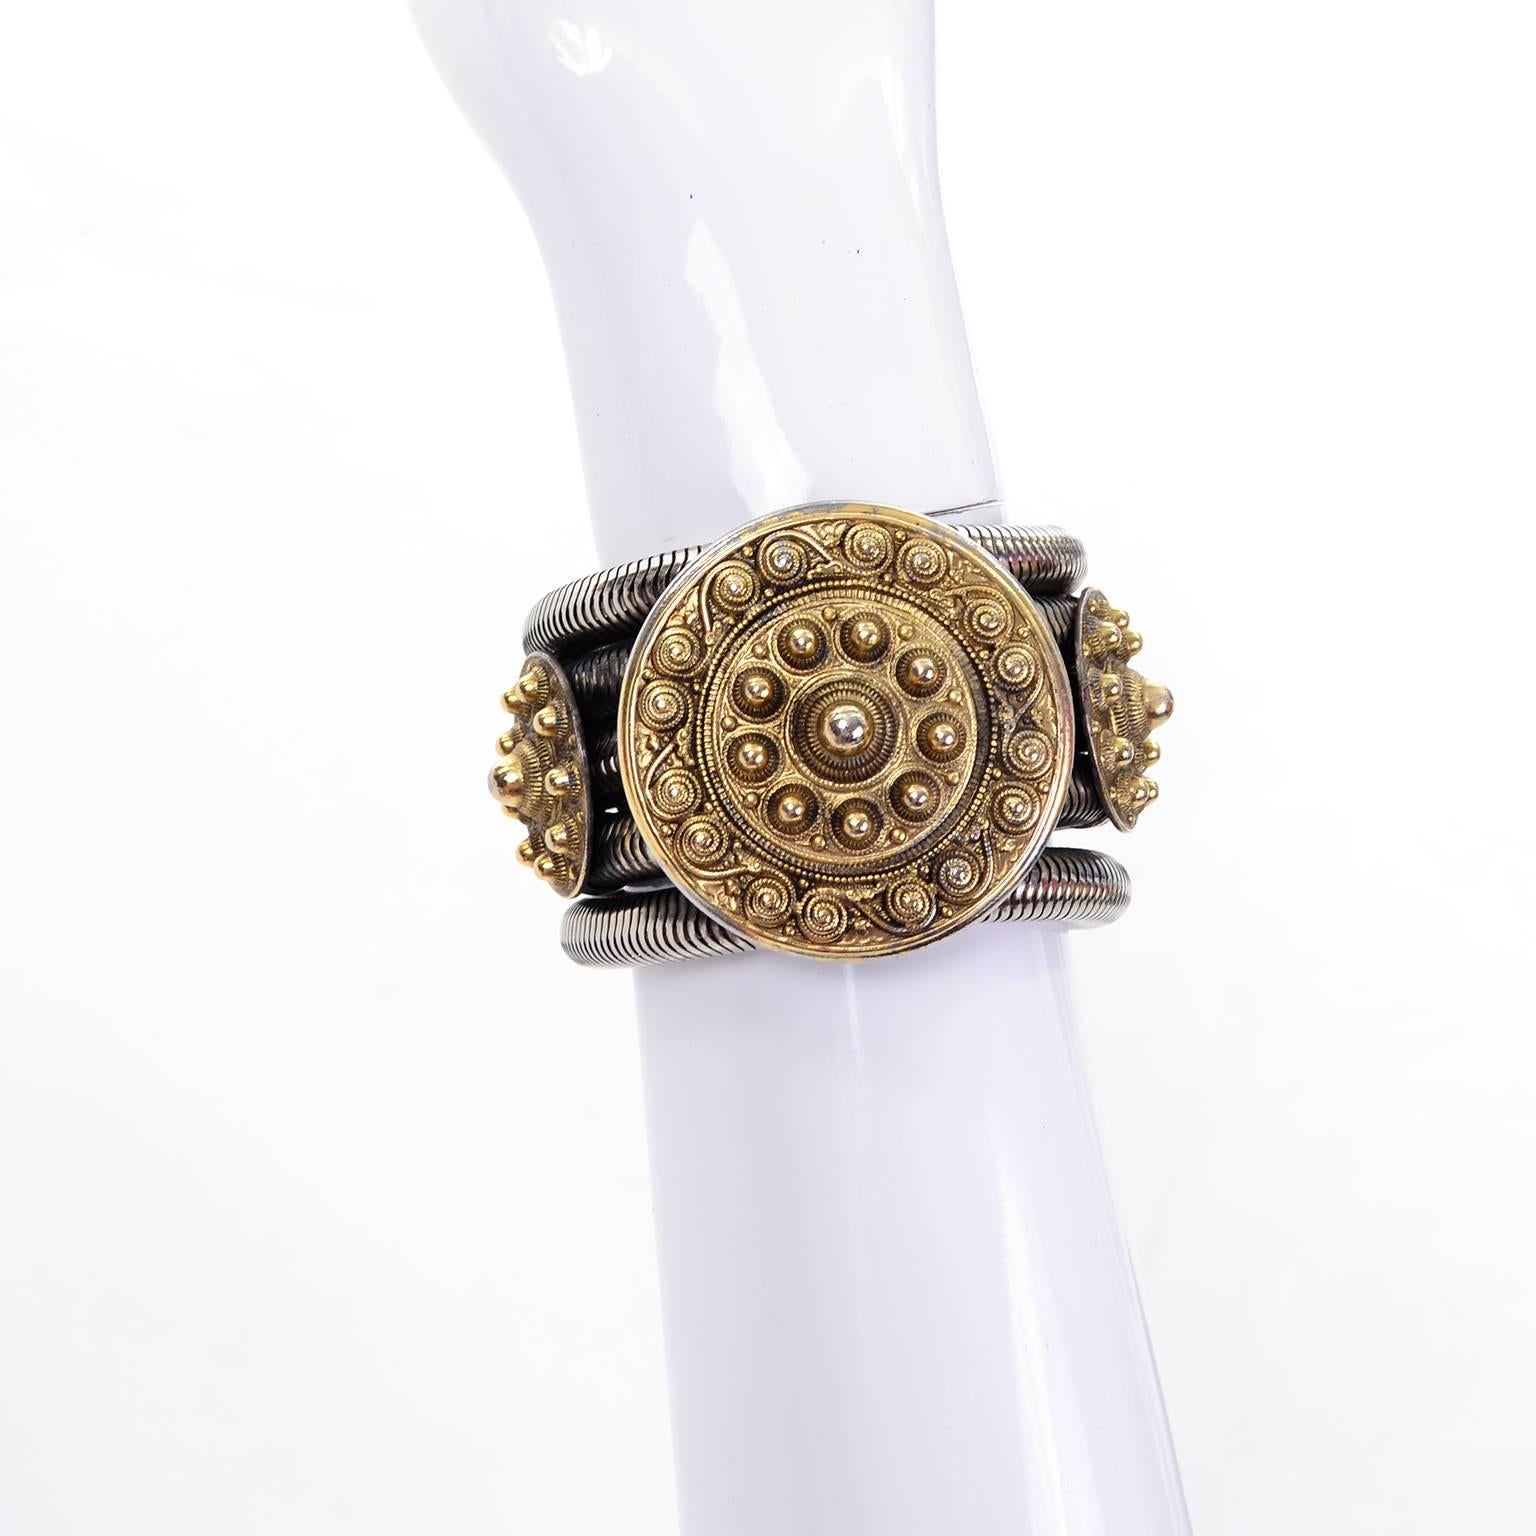 Il s'agit d'un bracelet vintage unique et étonnant des années 1980 conçu par Edouard Rambaud Paris, composé de cinq serpentins en métal de couleur argentée reliés par trois cercles centraux de couleur or. Le cercle central est accompagné d'un cercle